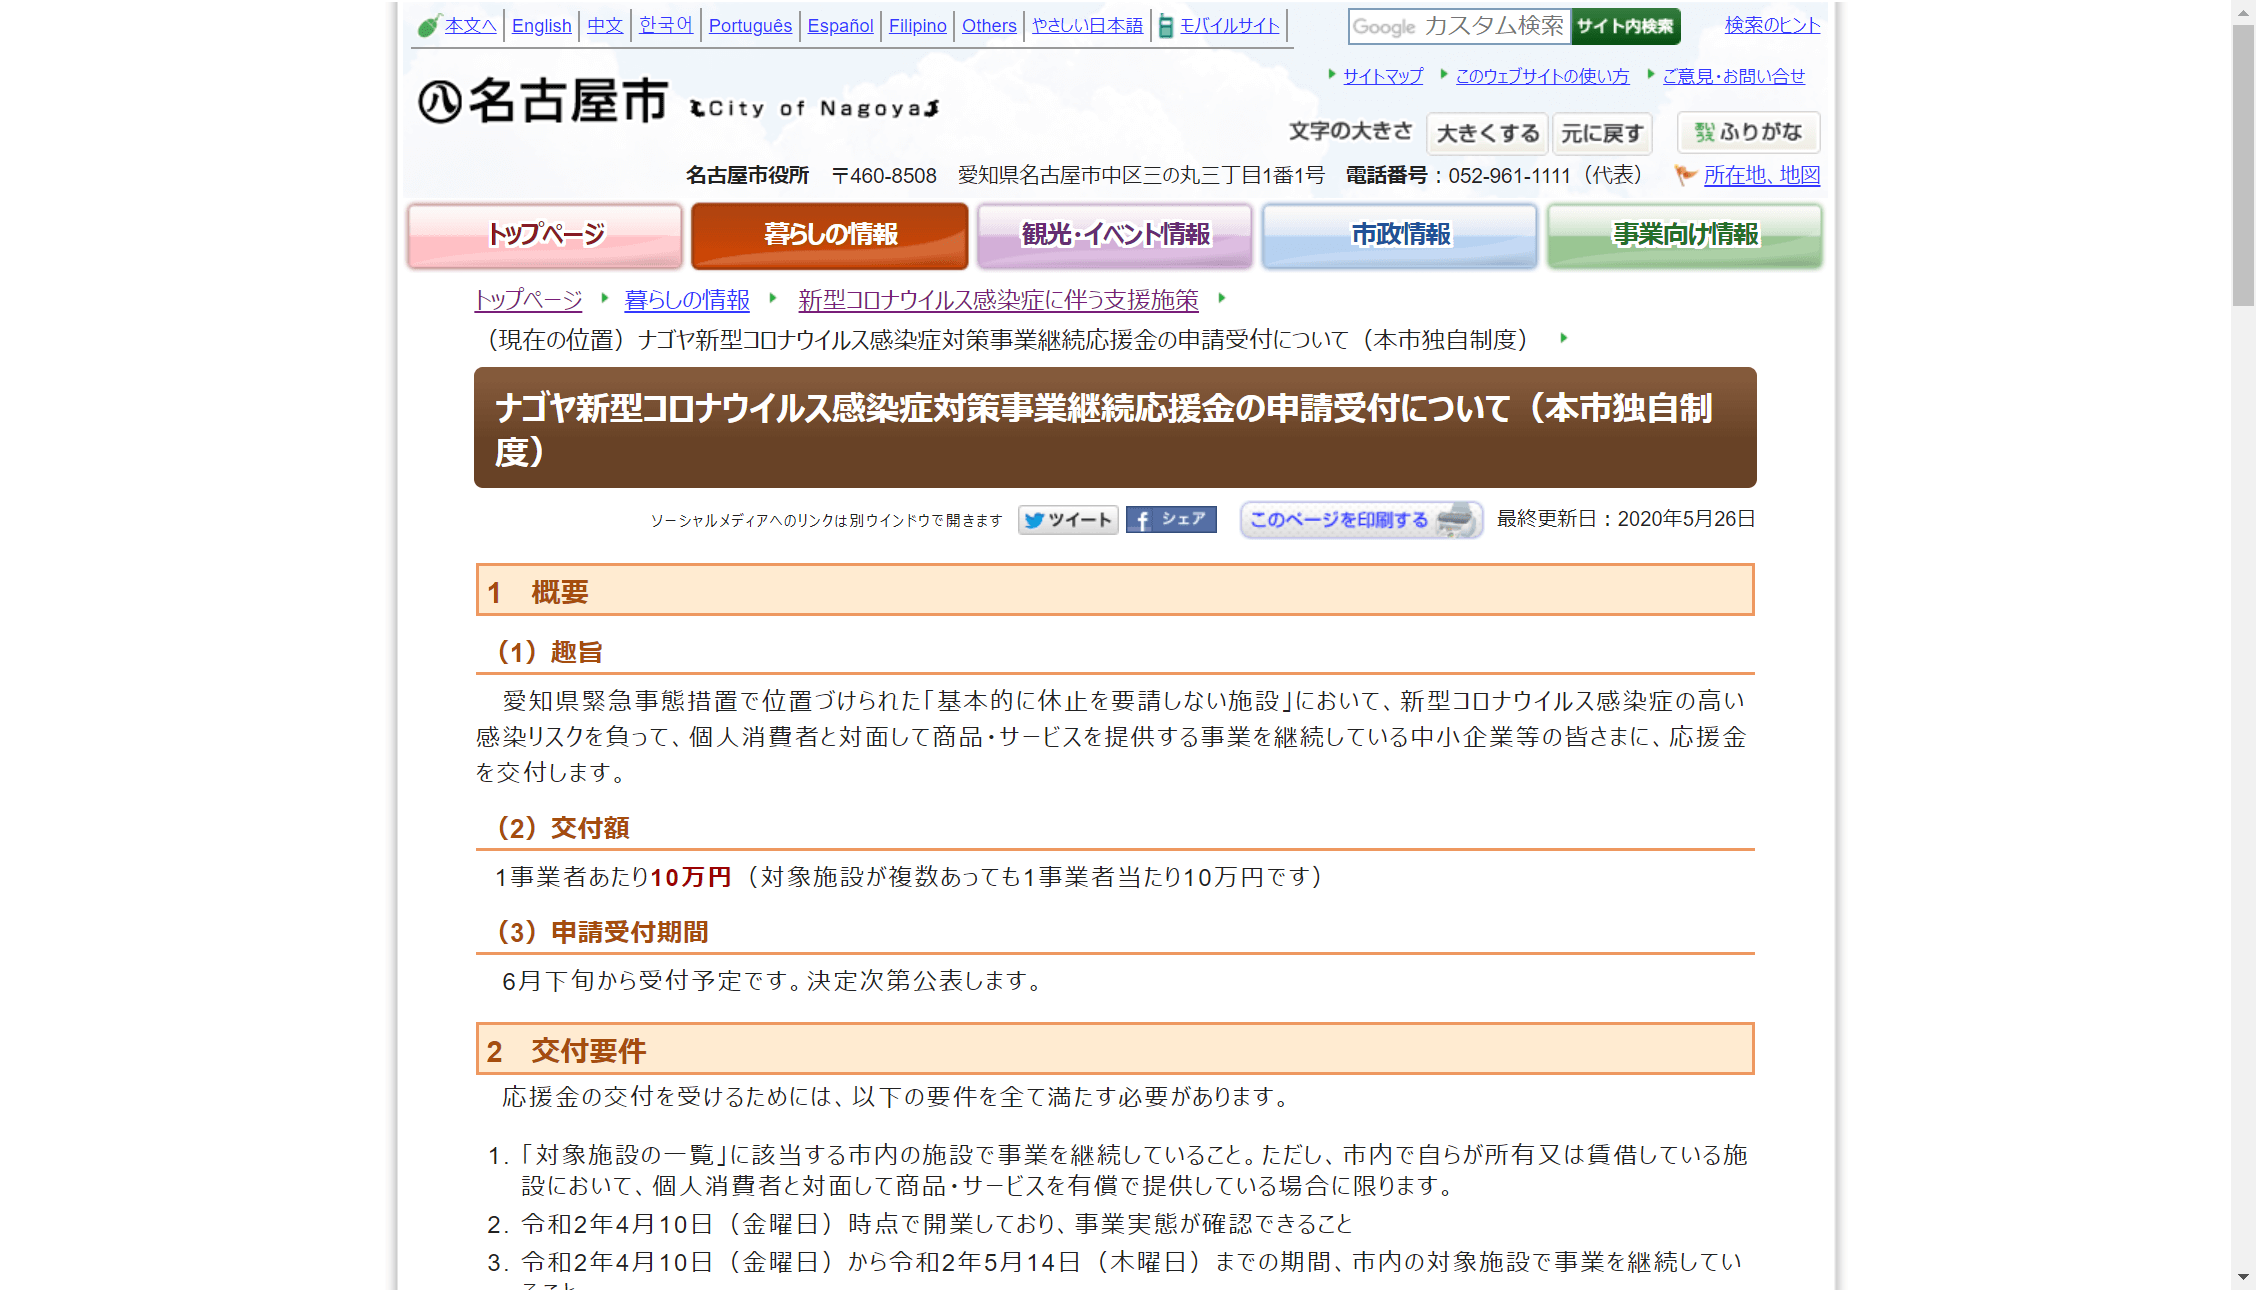 【名古屋市】ナゴヤ新型コロナウイルス感染症対策事業継続応援金